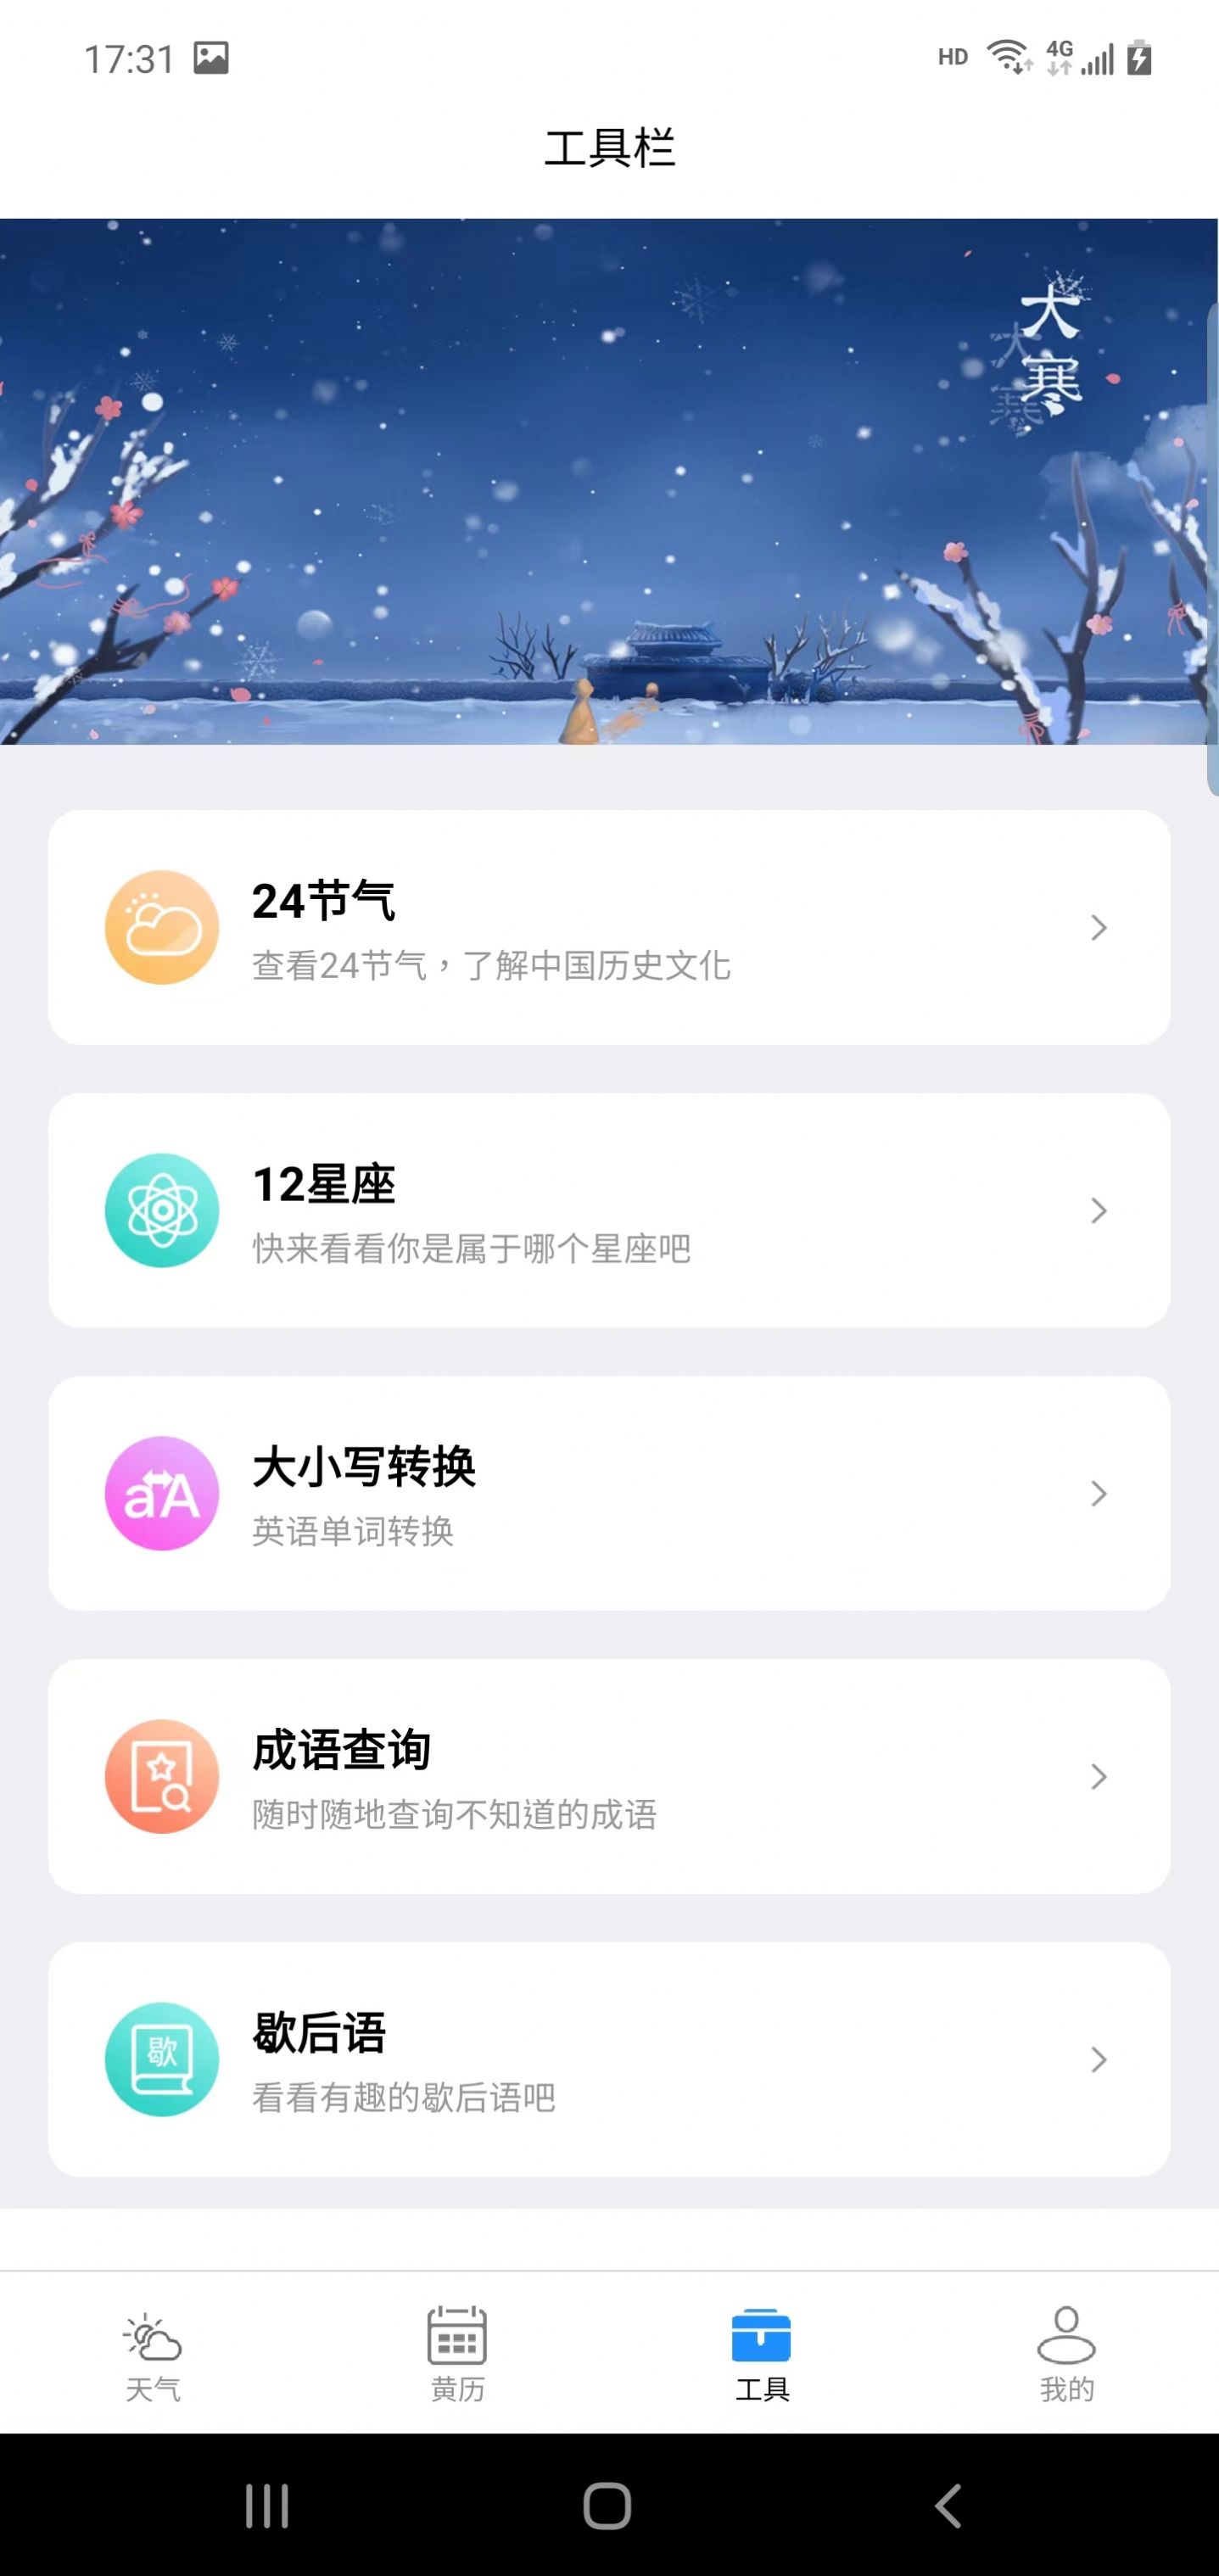 广阑天气app手机版图片1